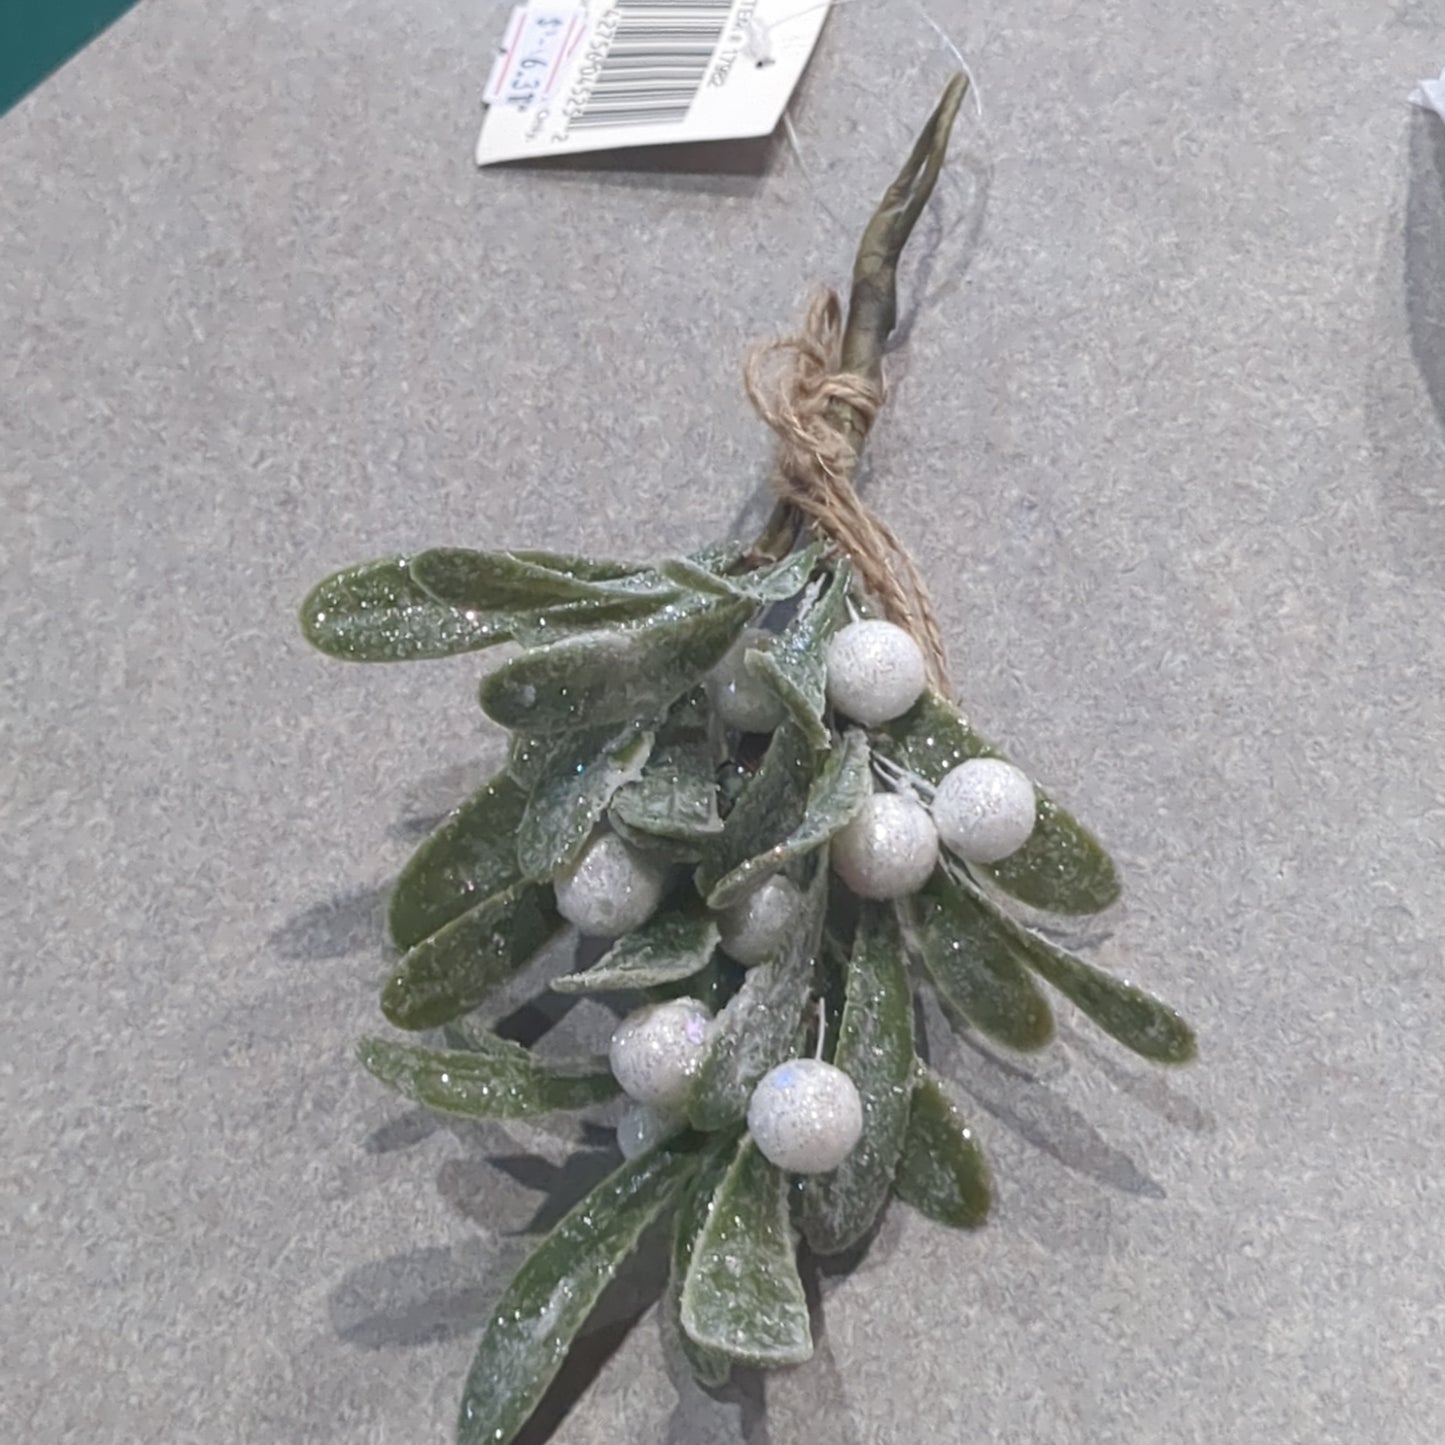 Glittered Mistletoe Ornament